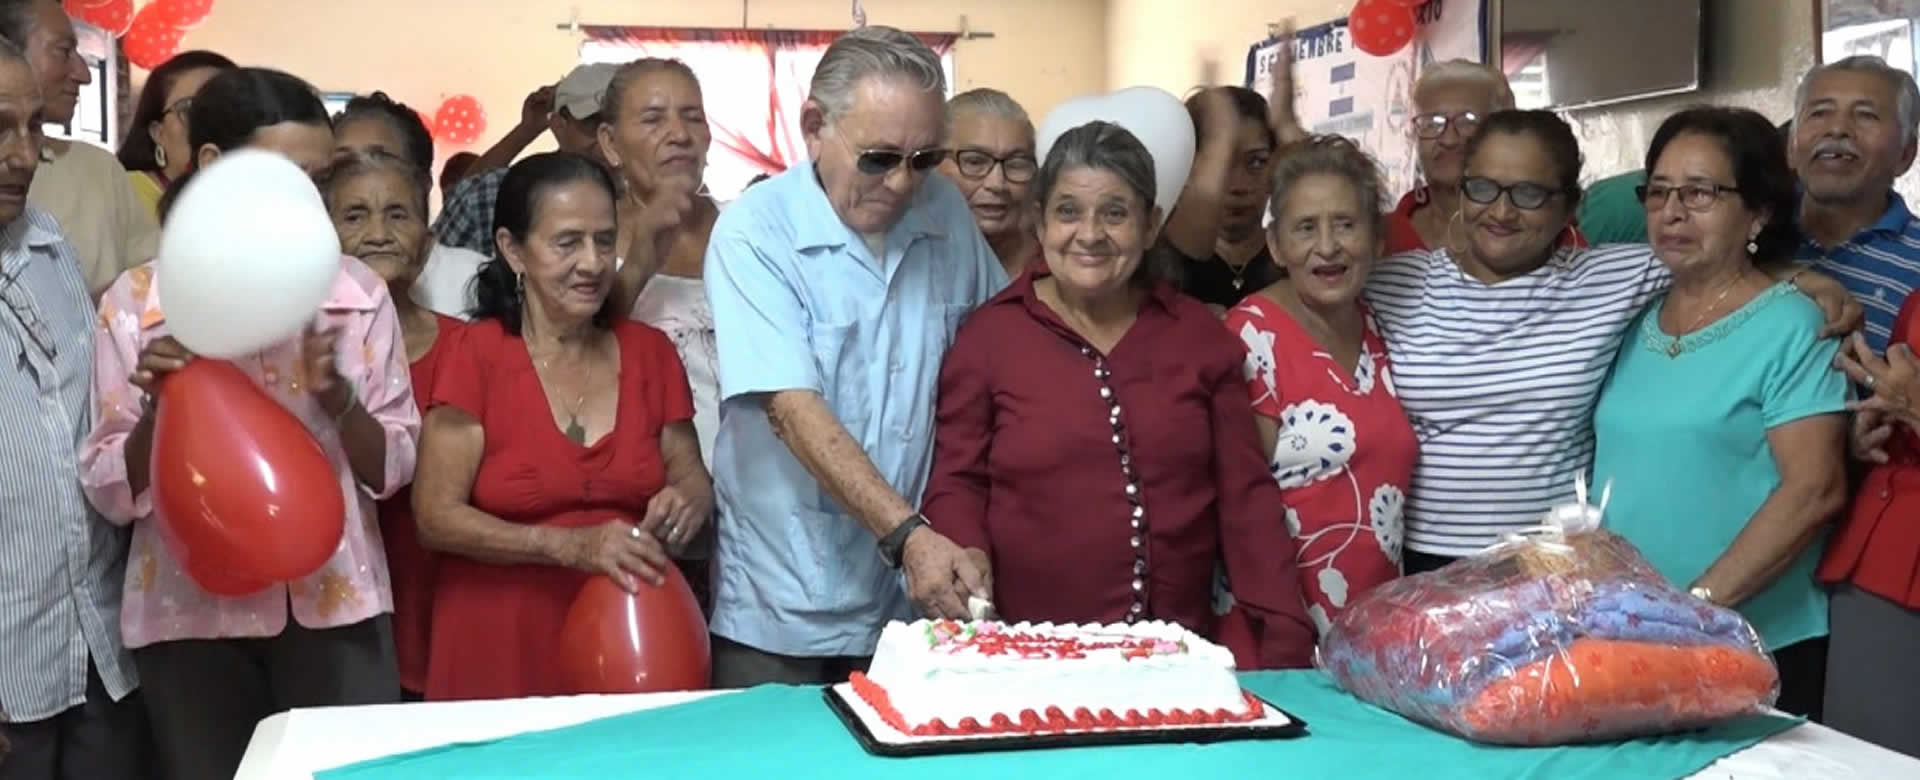 Luis Morales y María Noguera celebran su Boda de Oro en la Casa Club Ariel Darse